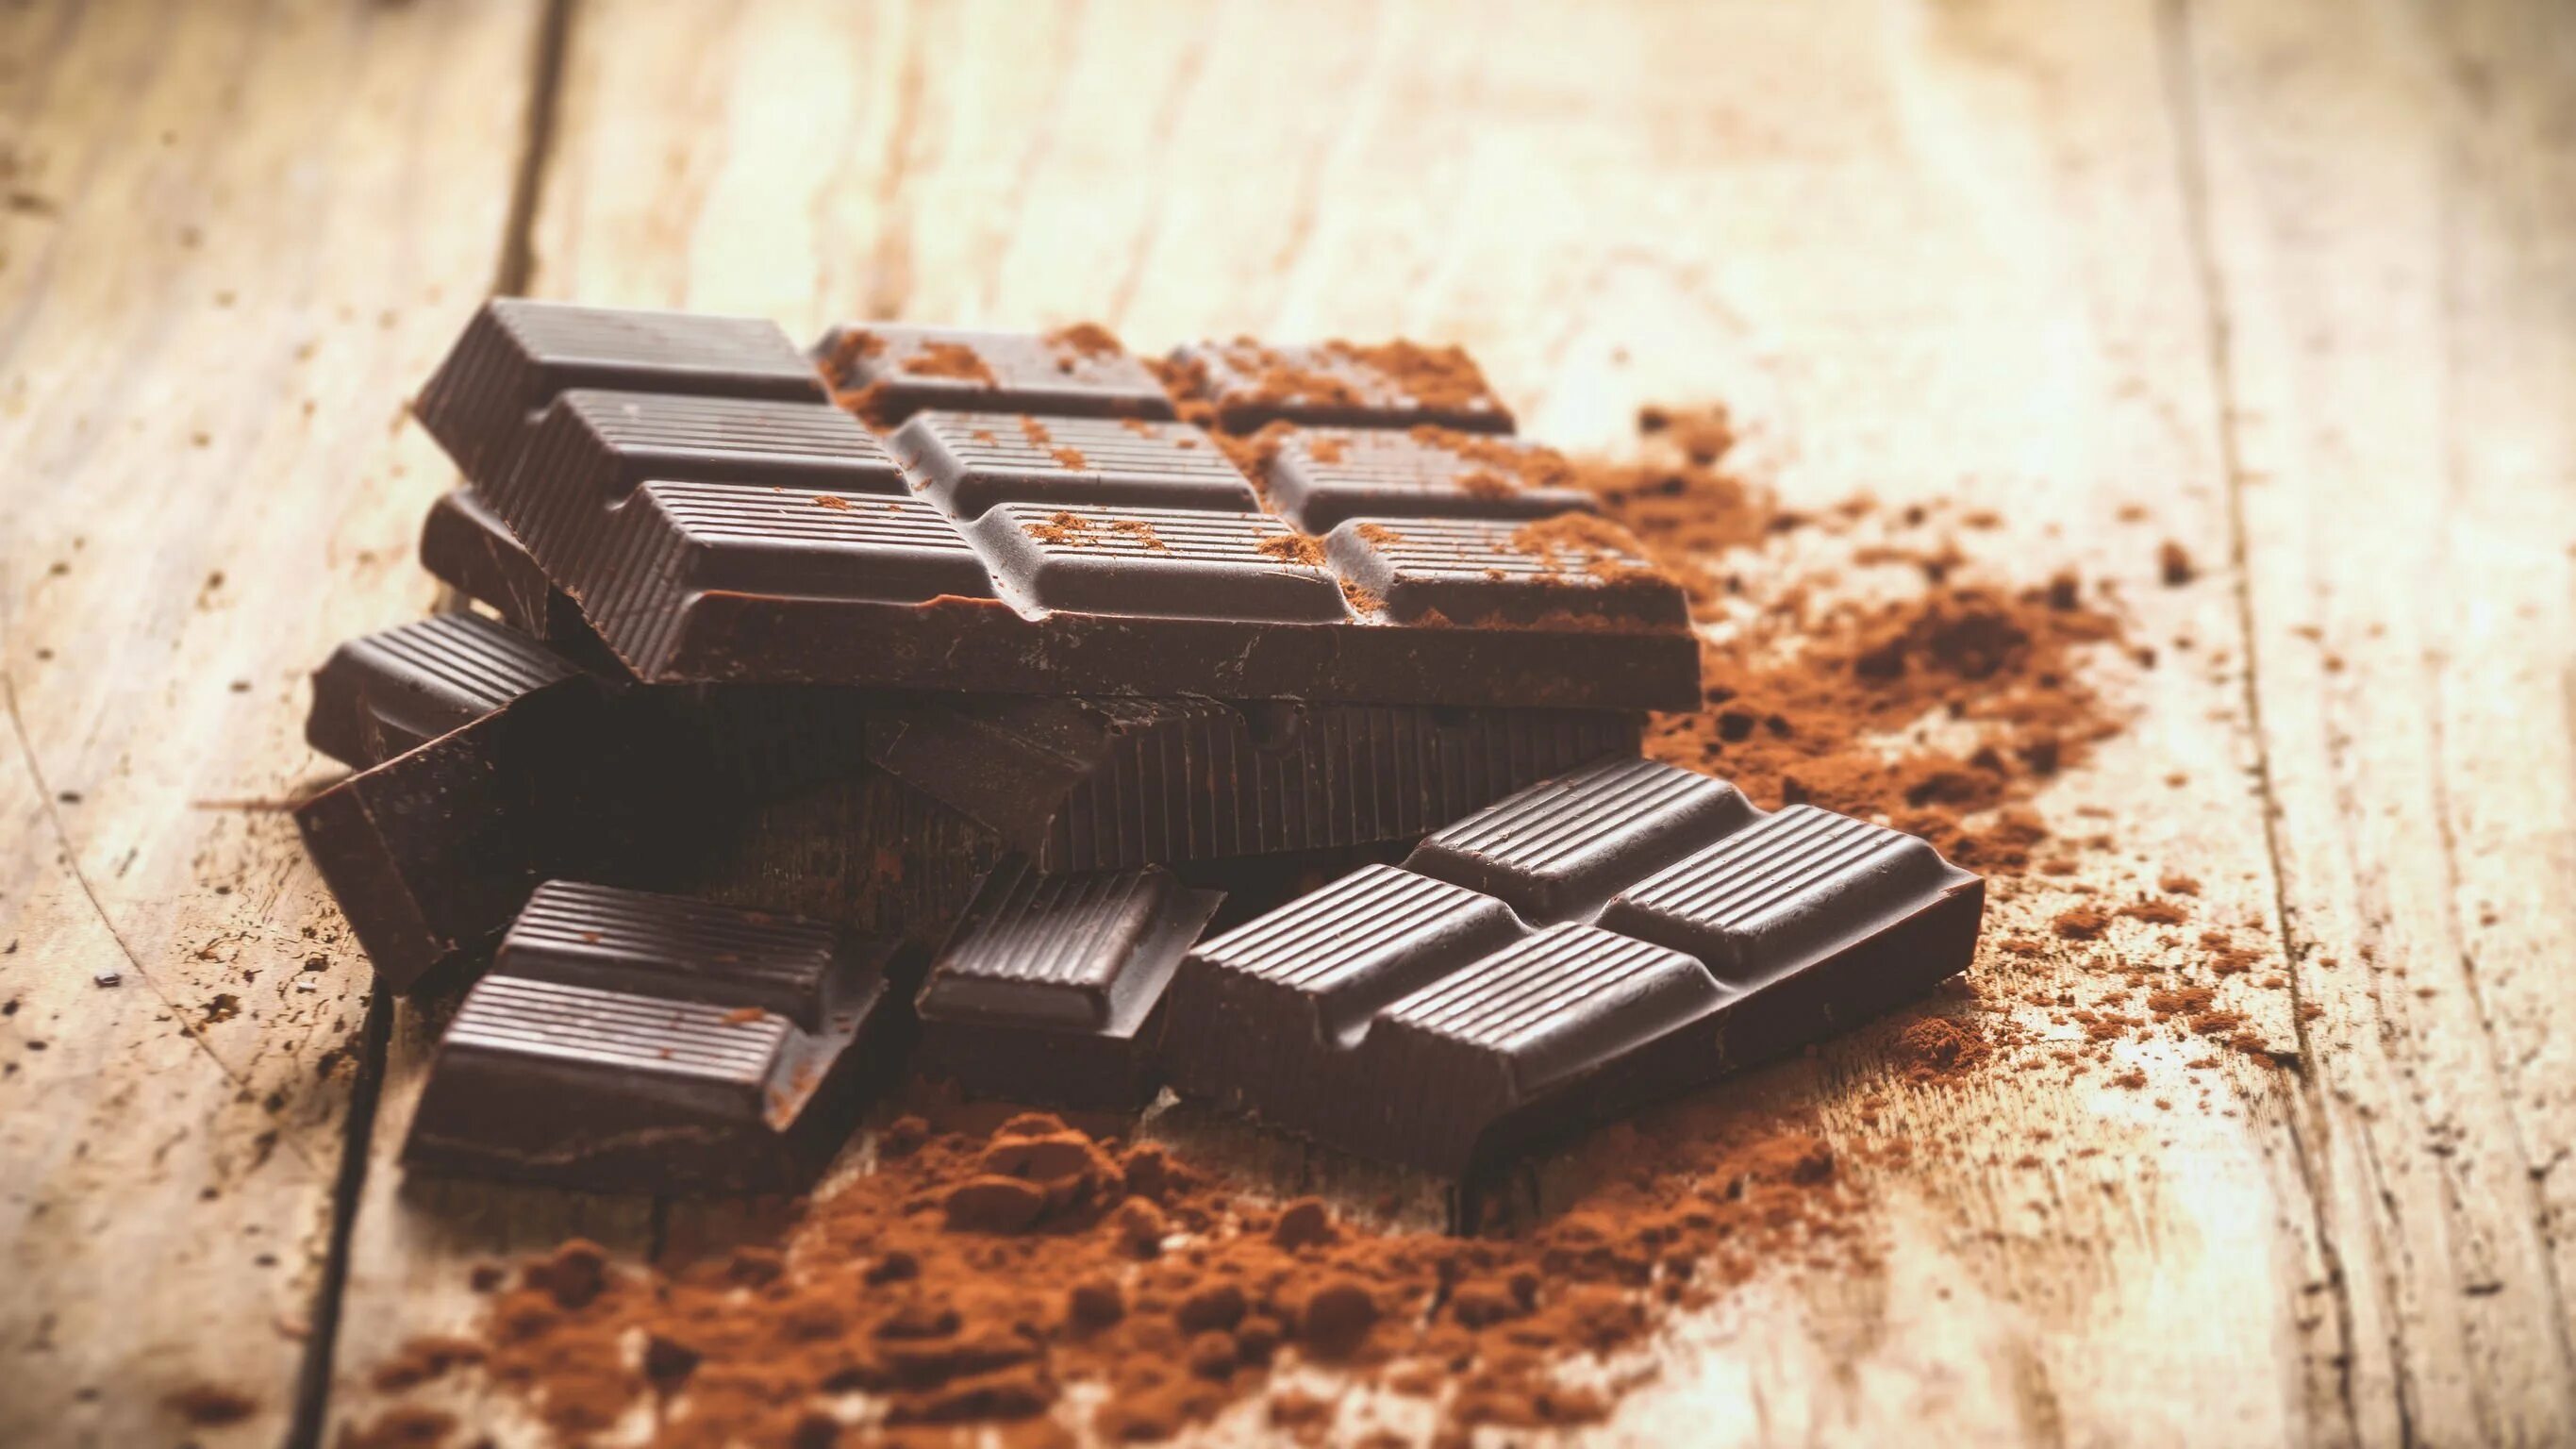 Real Brick (Горький шоколад (13)). Плитка шоколада. Шоколадка на столе. Шоколадная плитка.